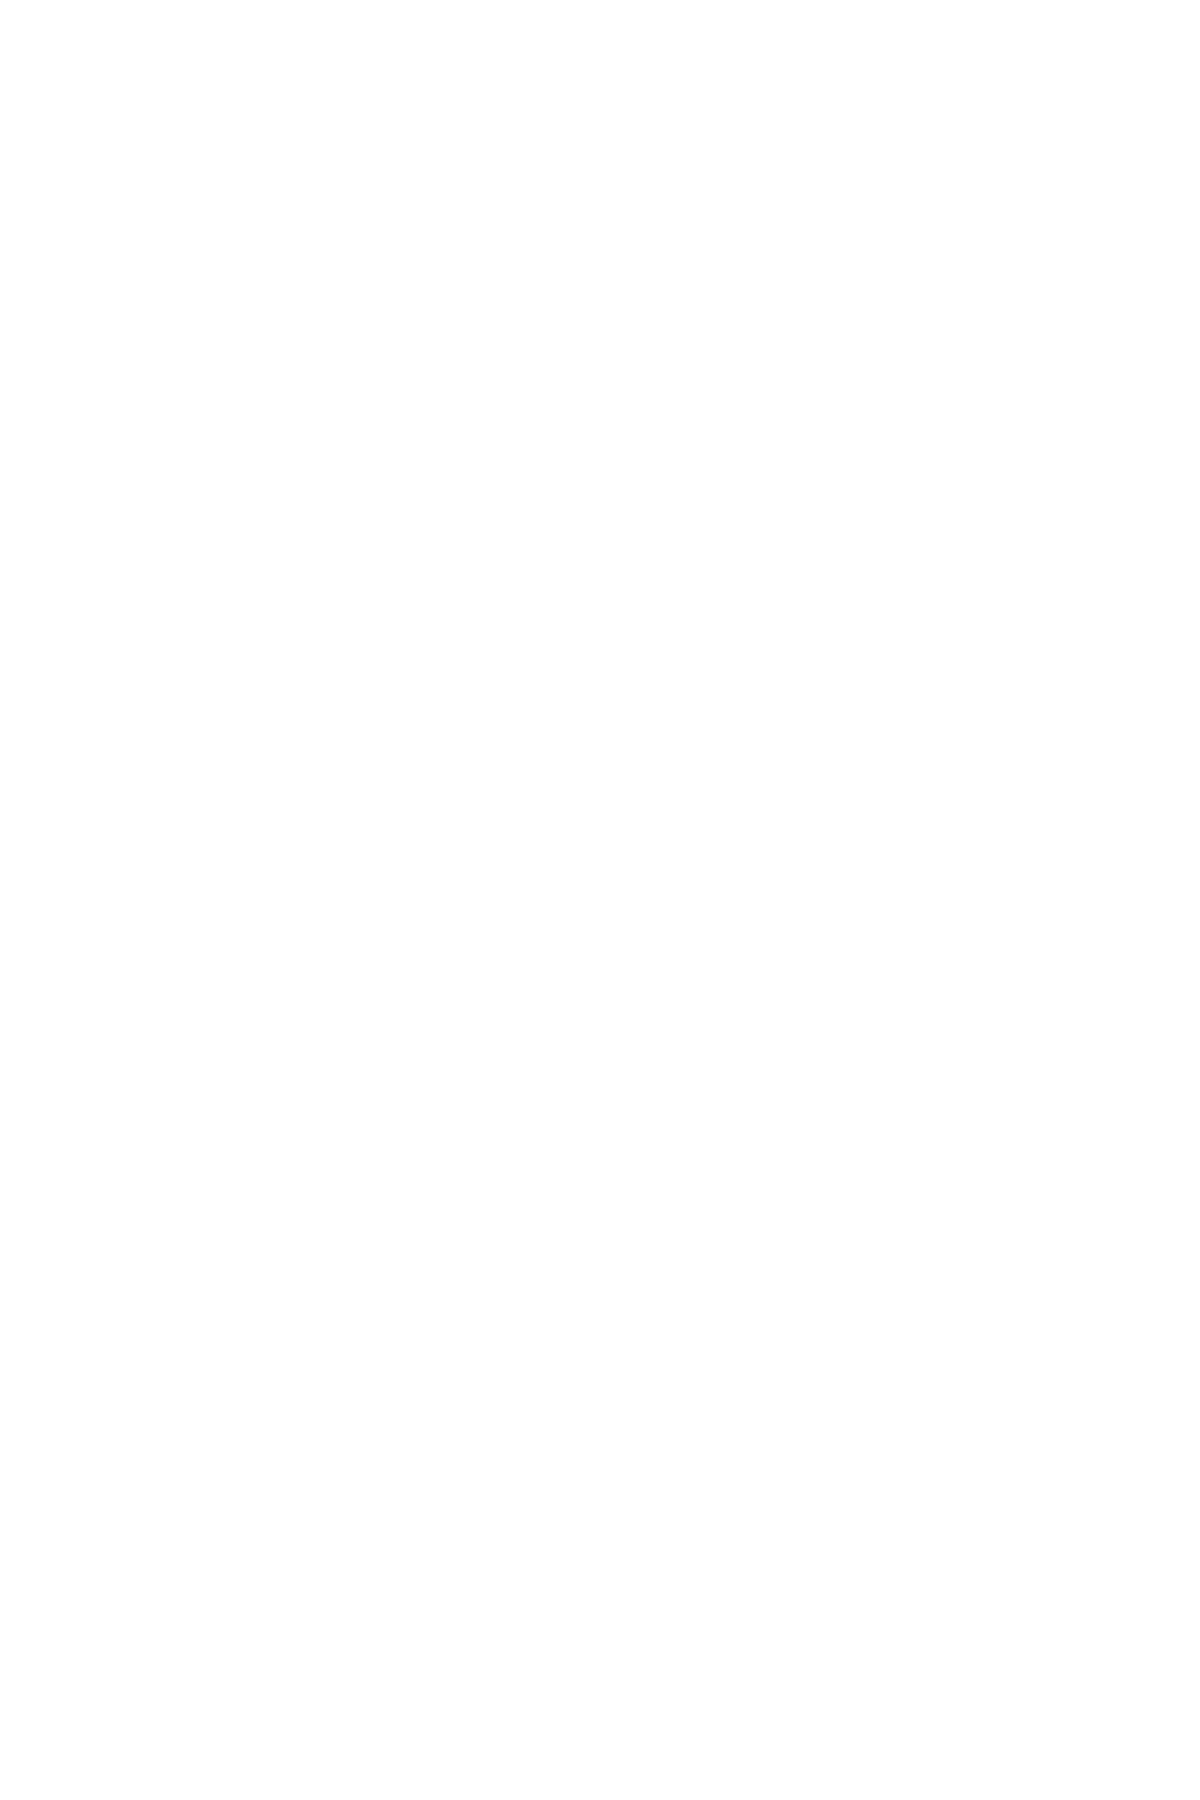 Спидскетер на пьедистале, церемони награждения на этапе кубка ФЛРД, лыжероллерный комплекс им Александр Легкова, парк 850 летия Москвы